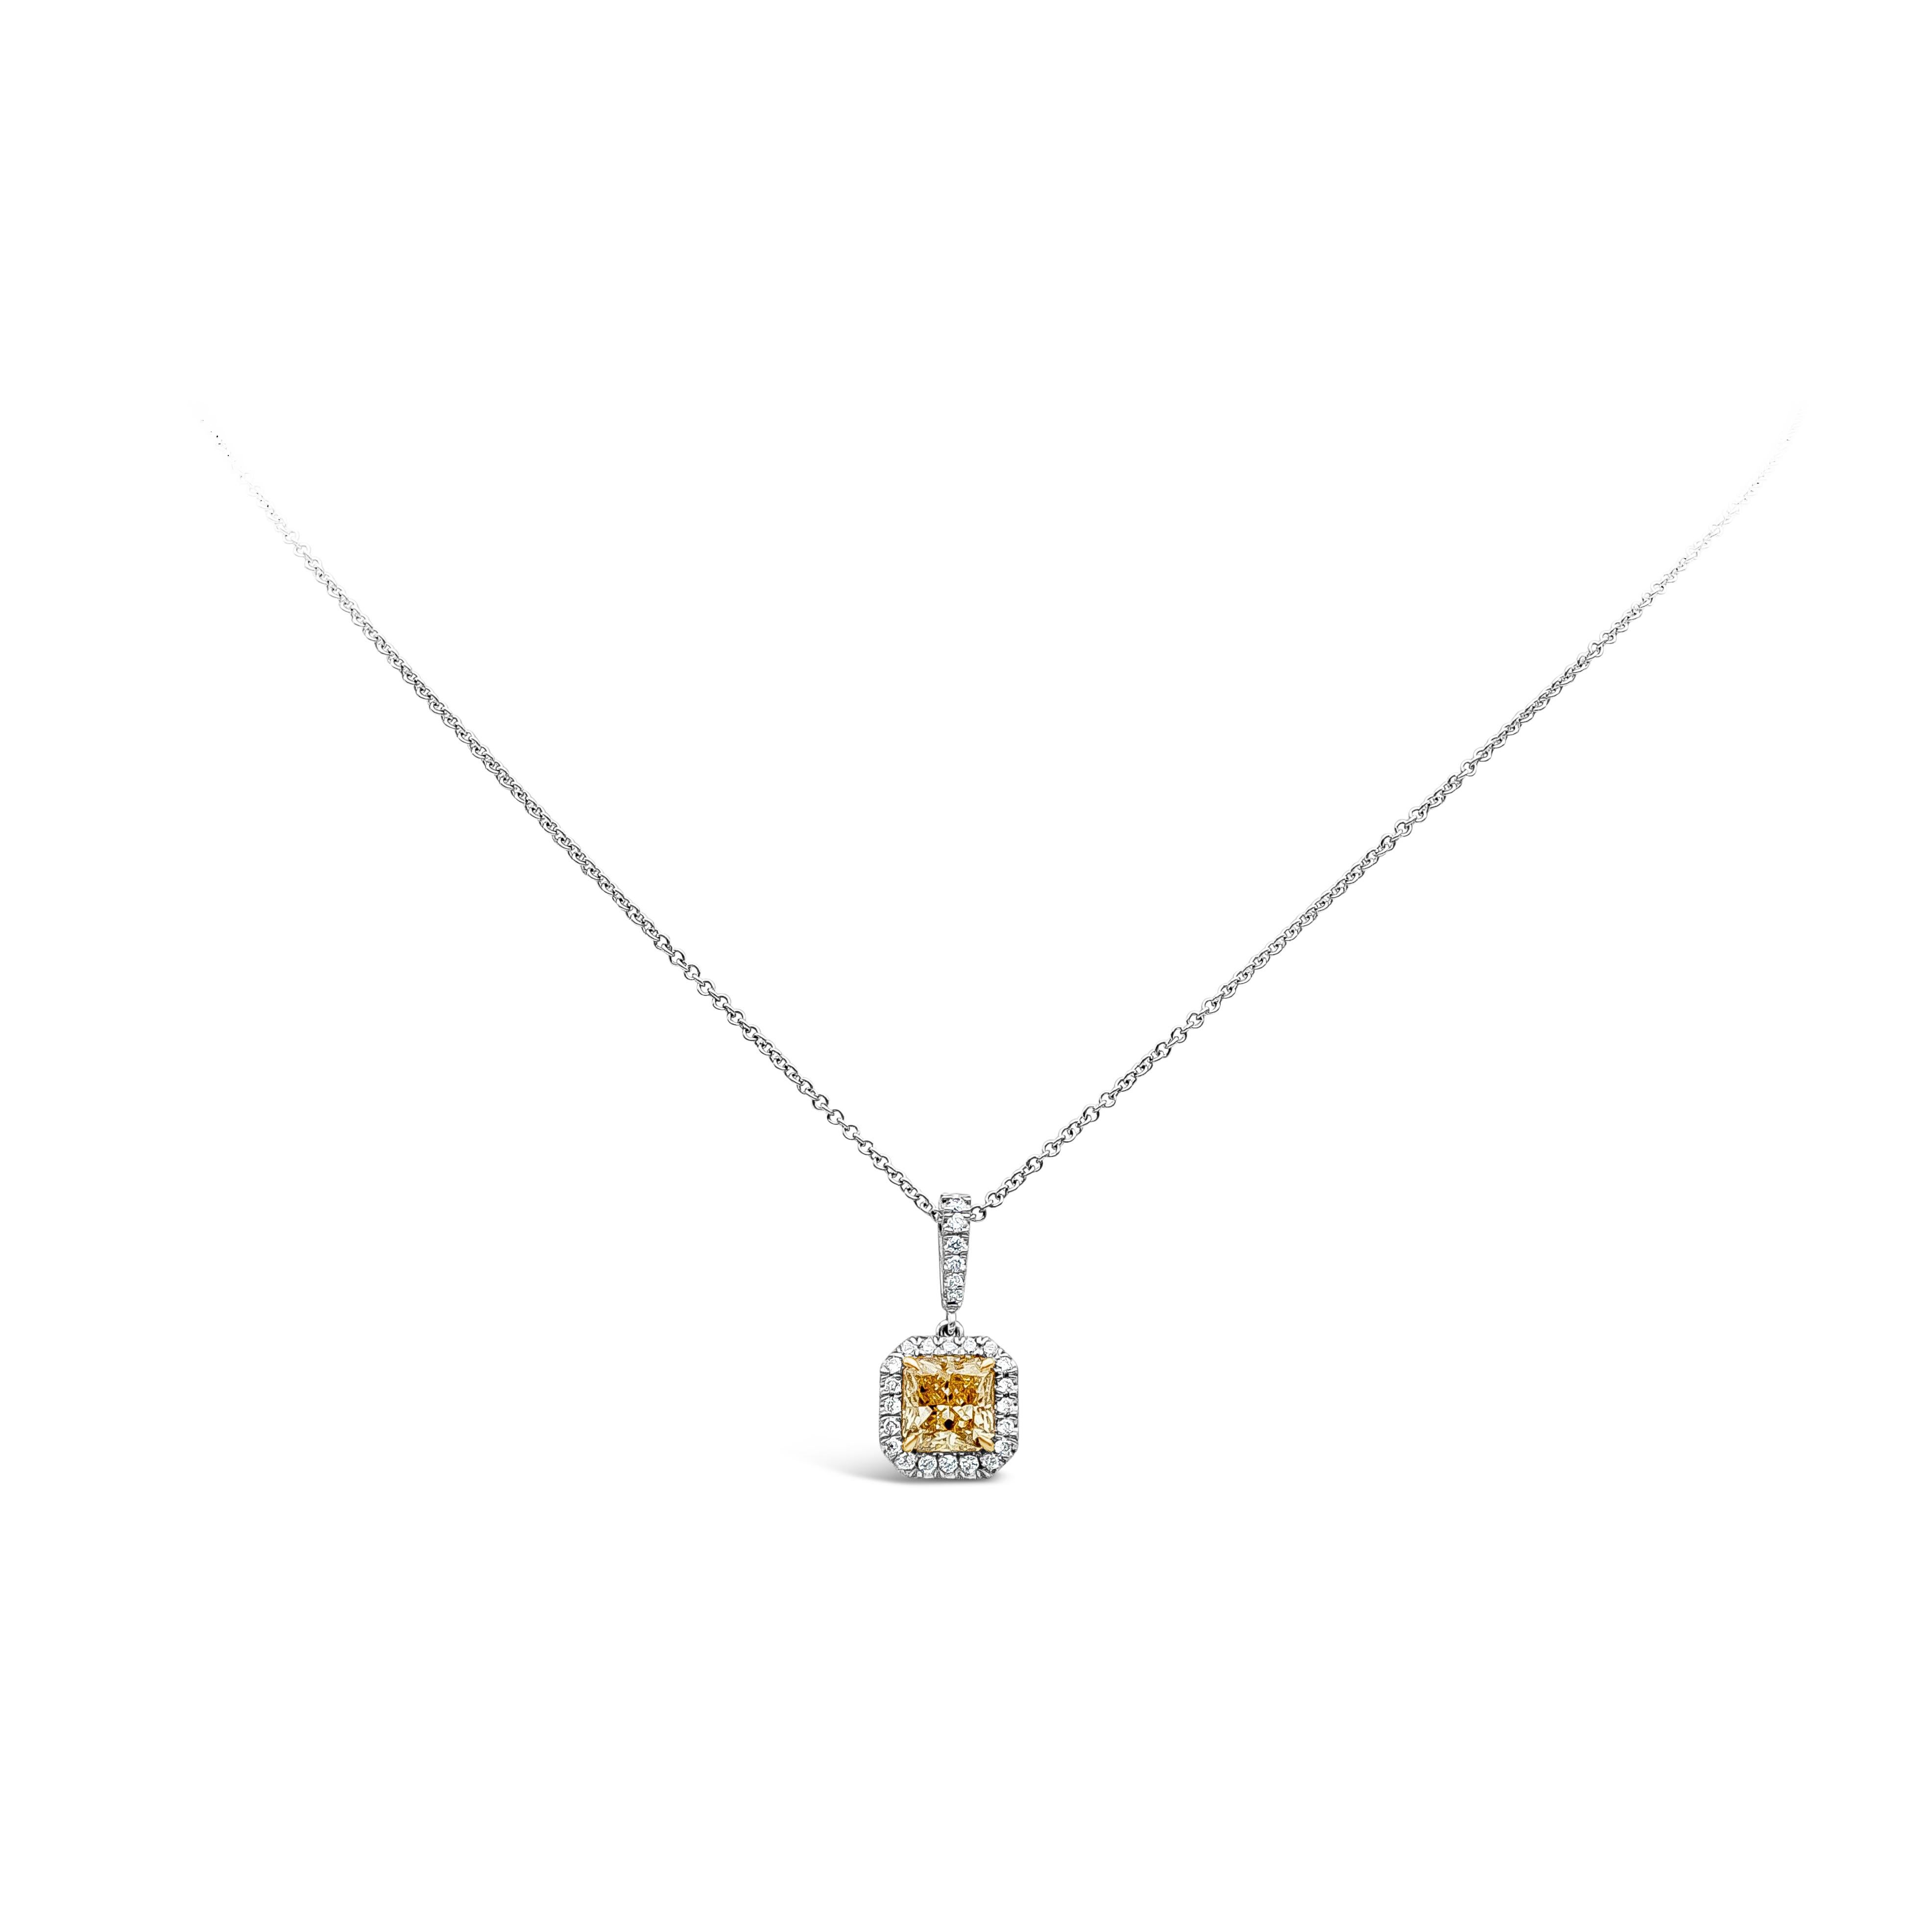 Ce magnifique diamant jaune de 1,04 carat à taille radiante, serti par des griffes en or jaune, est entouré de diamants ronds brillants. Il est suspendu à une chaîne en or blanc 18 carats par un anneau incrusté de diamants. 

Style disponible dans